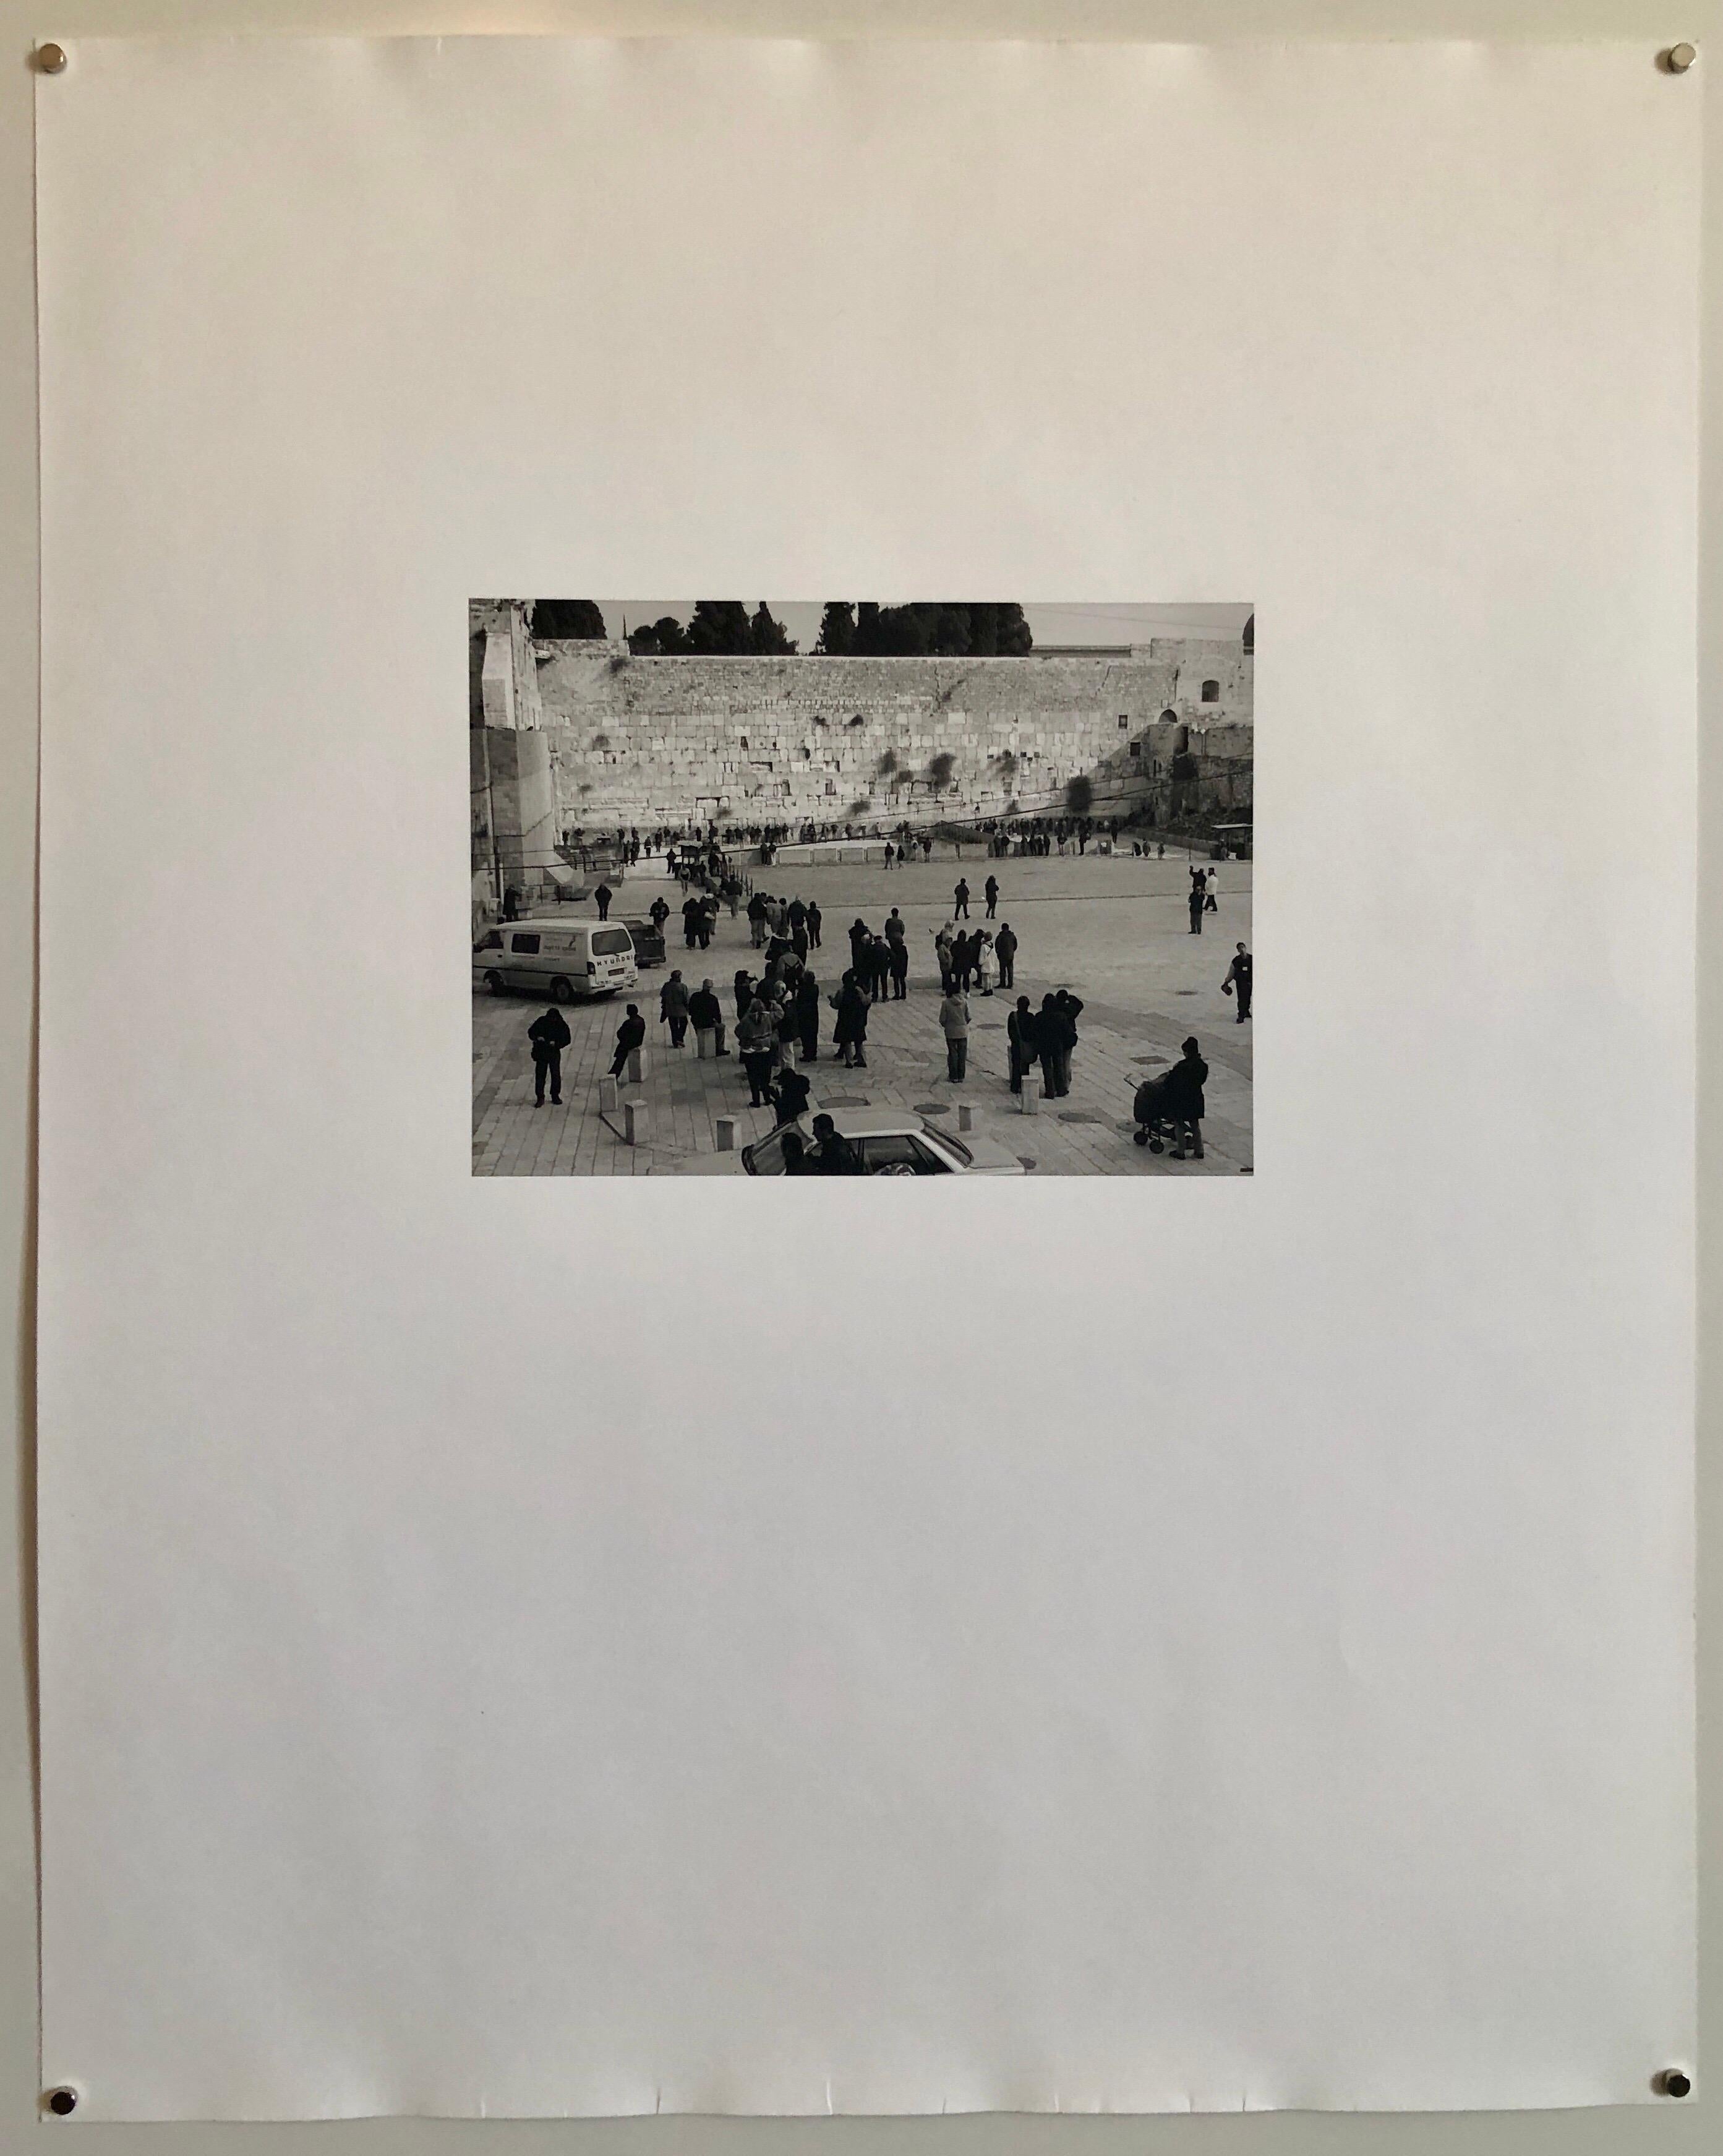 Schwarz-Weiß-Foto der Klagemauer (Kotel Hamaaravi) in Jerusalem, Israel. Handsigniert, datiert und betitelt. Aus einer sehr kleinen Auflage von nur 5 Drucken. 

(amerikanisch-israelisch) Mikael Levin wurde in New York City geboren und wuchs in